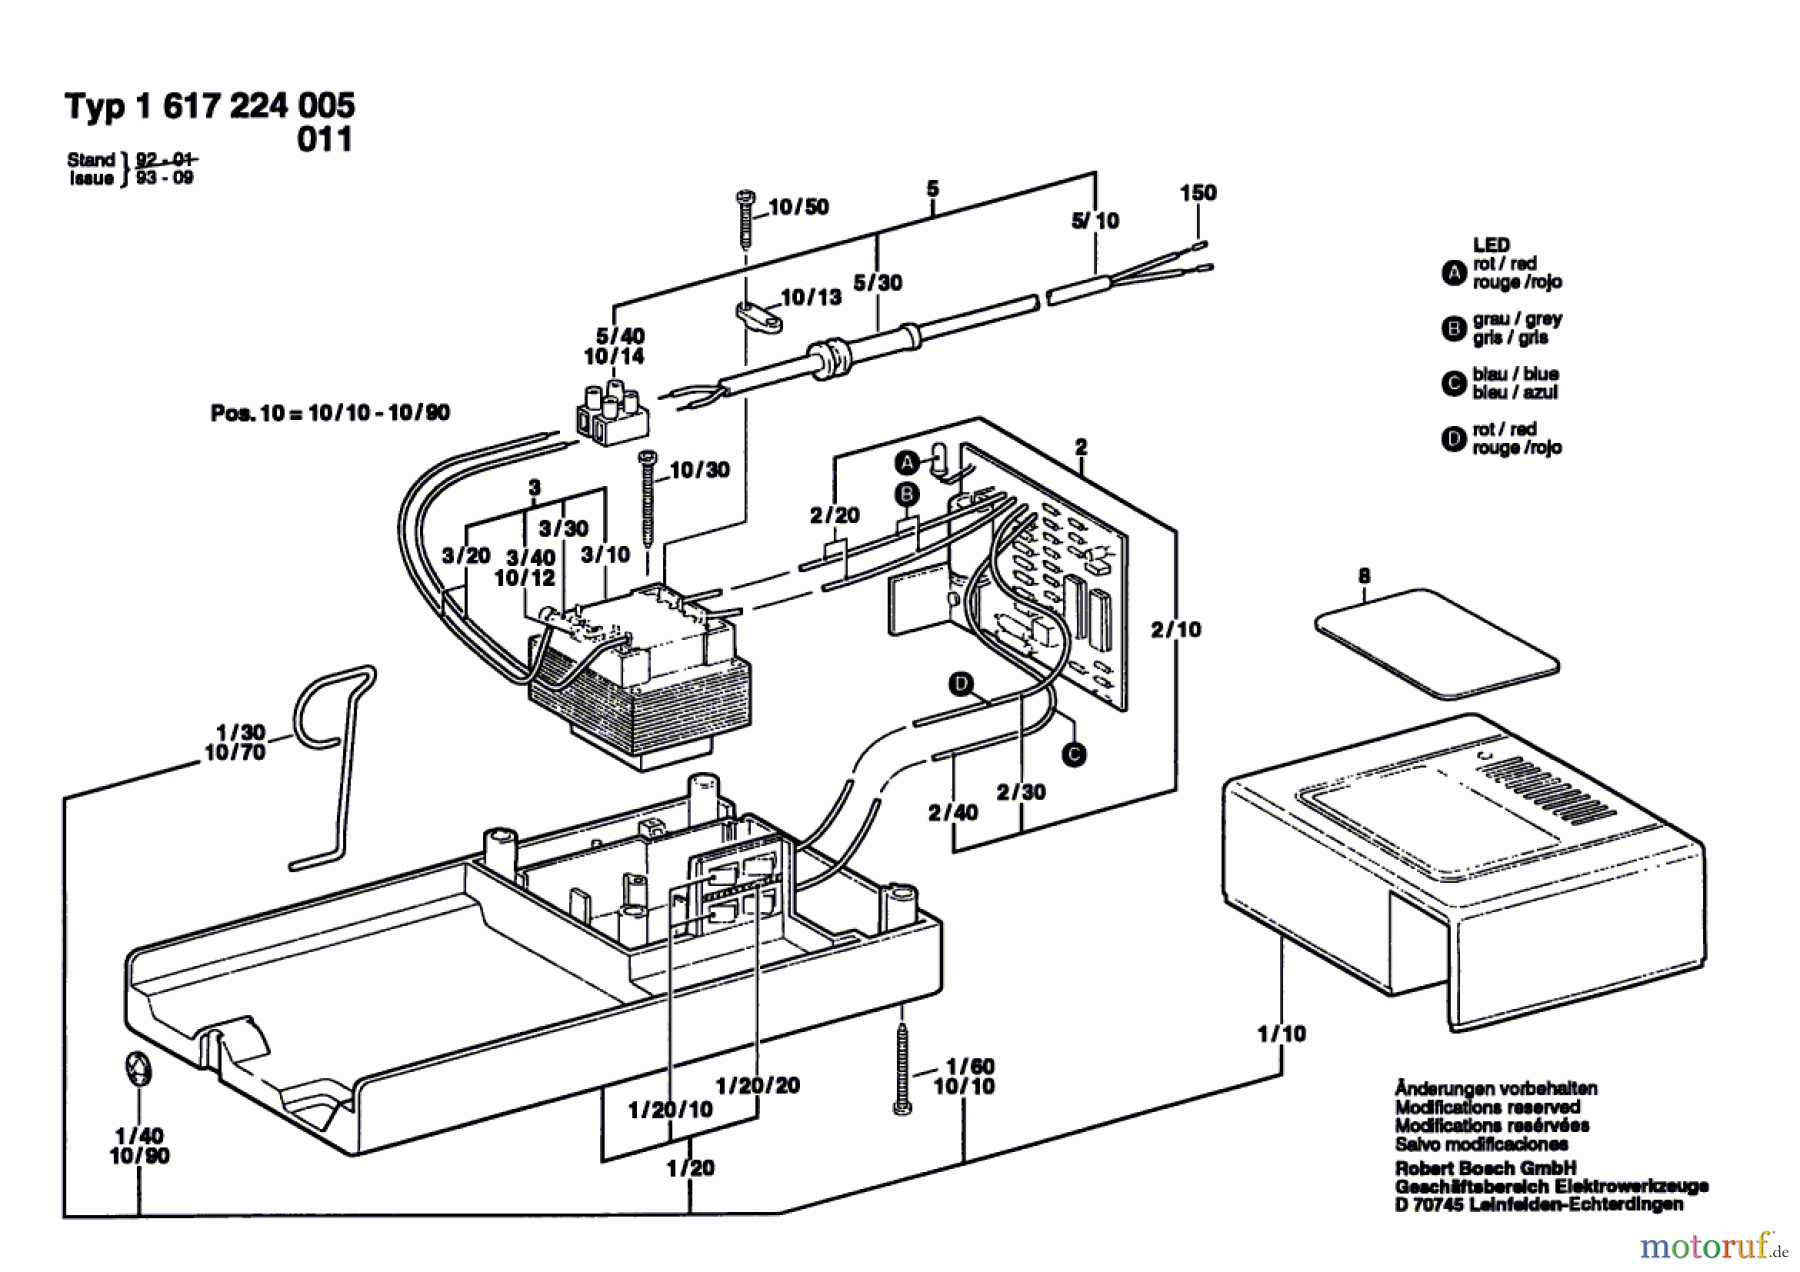  Bosch Werkzeug Ladegerät ---- Seite 1